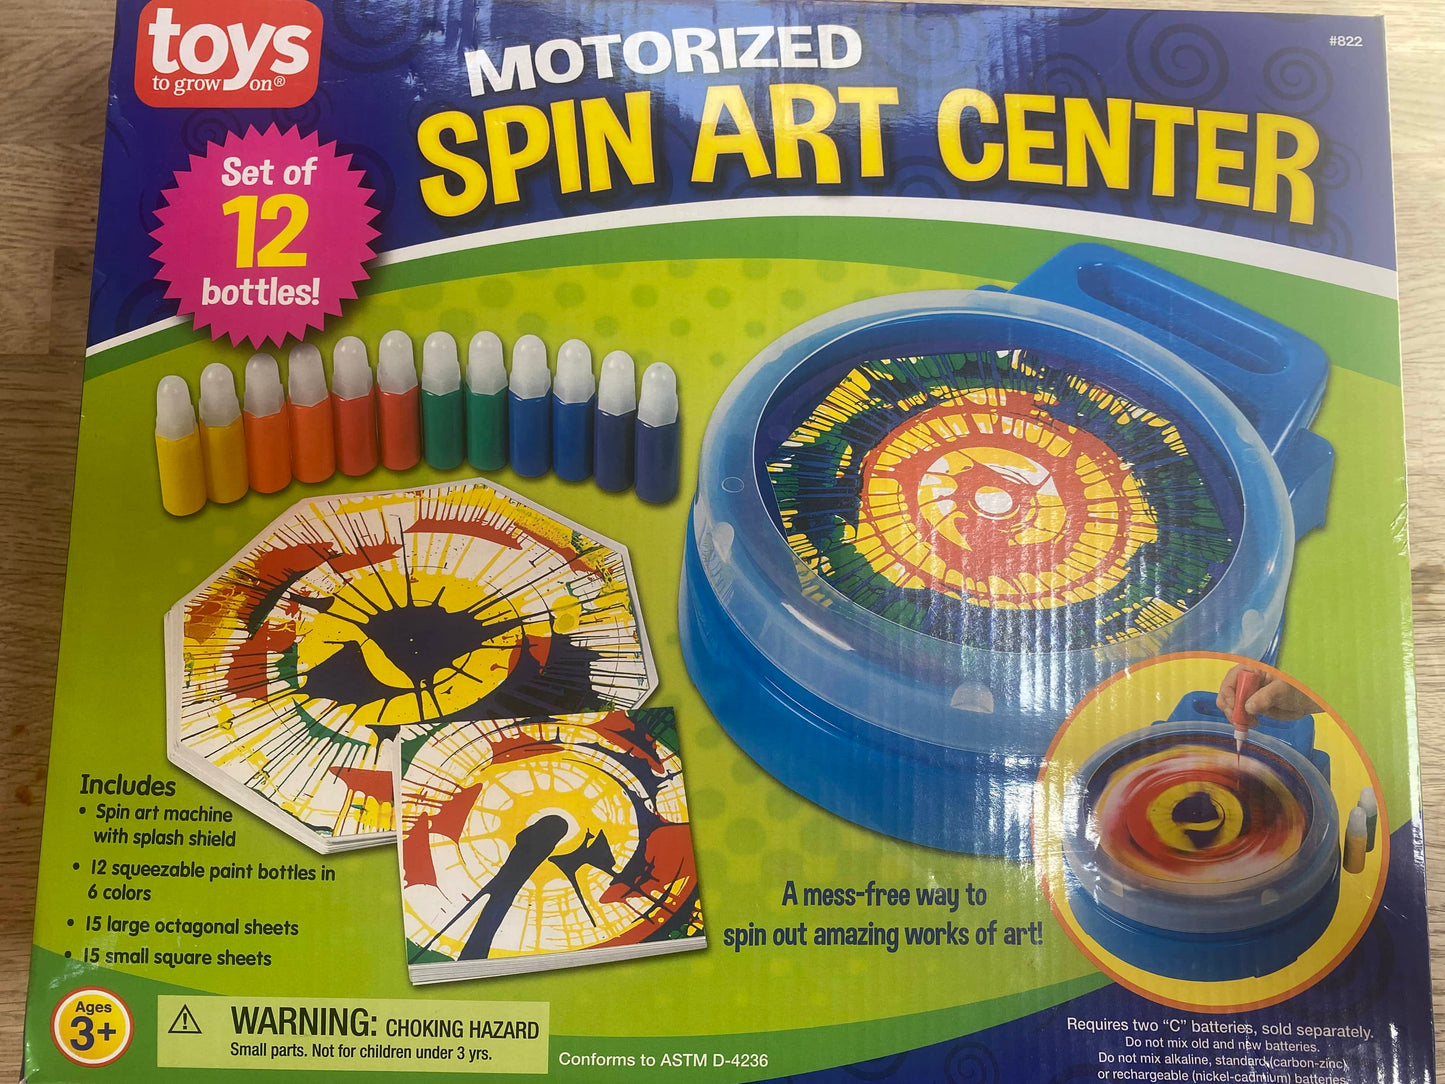 Motorized Spin Art Center